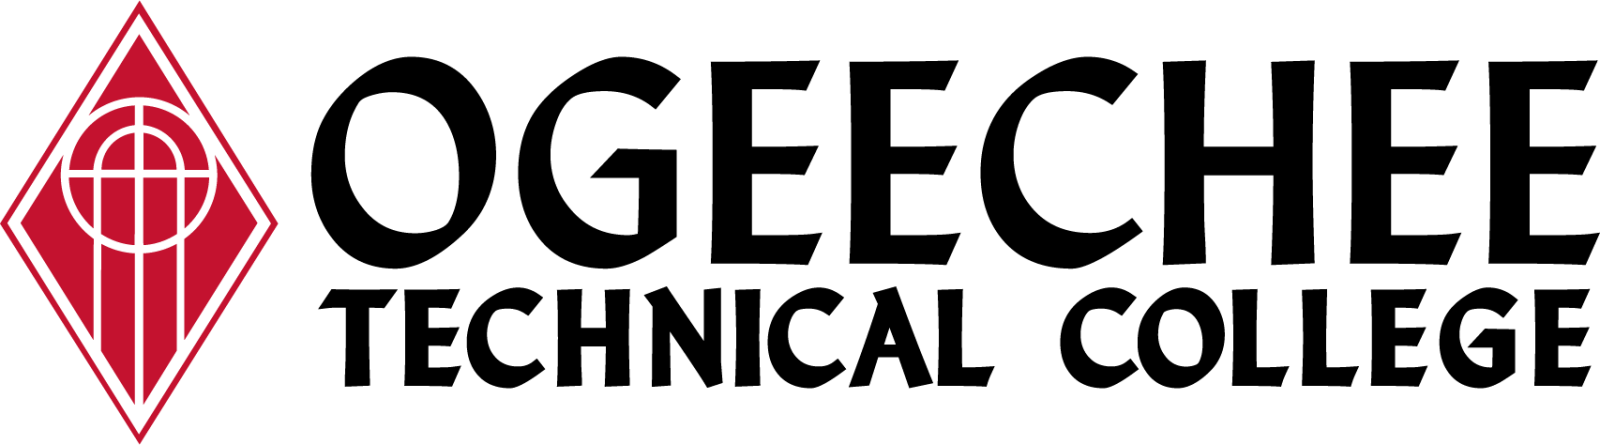 Ogeechee Technical College Logo